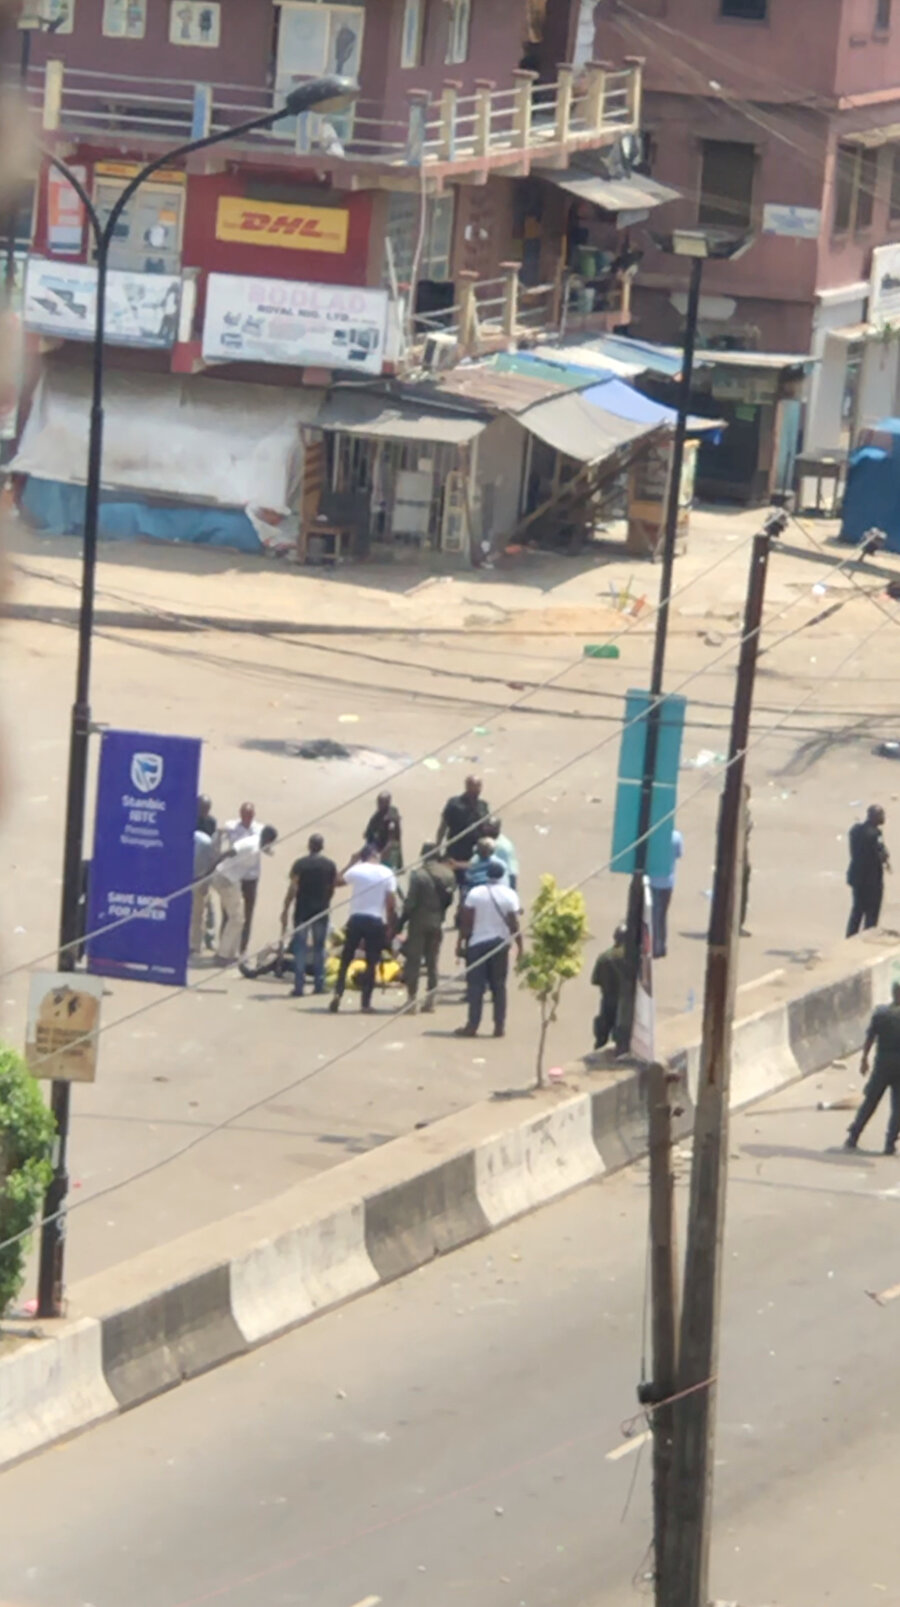 Edinilen görüntüye göre yerde uzanan bir adamın başında silahlı adamlar bulunuyor, Lagos, 21 Ekim 2020